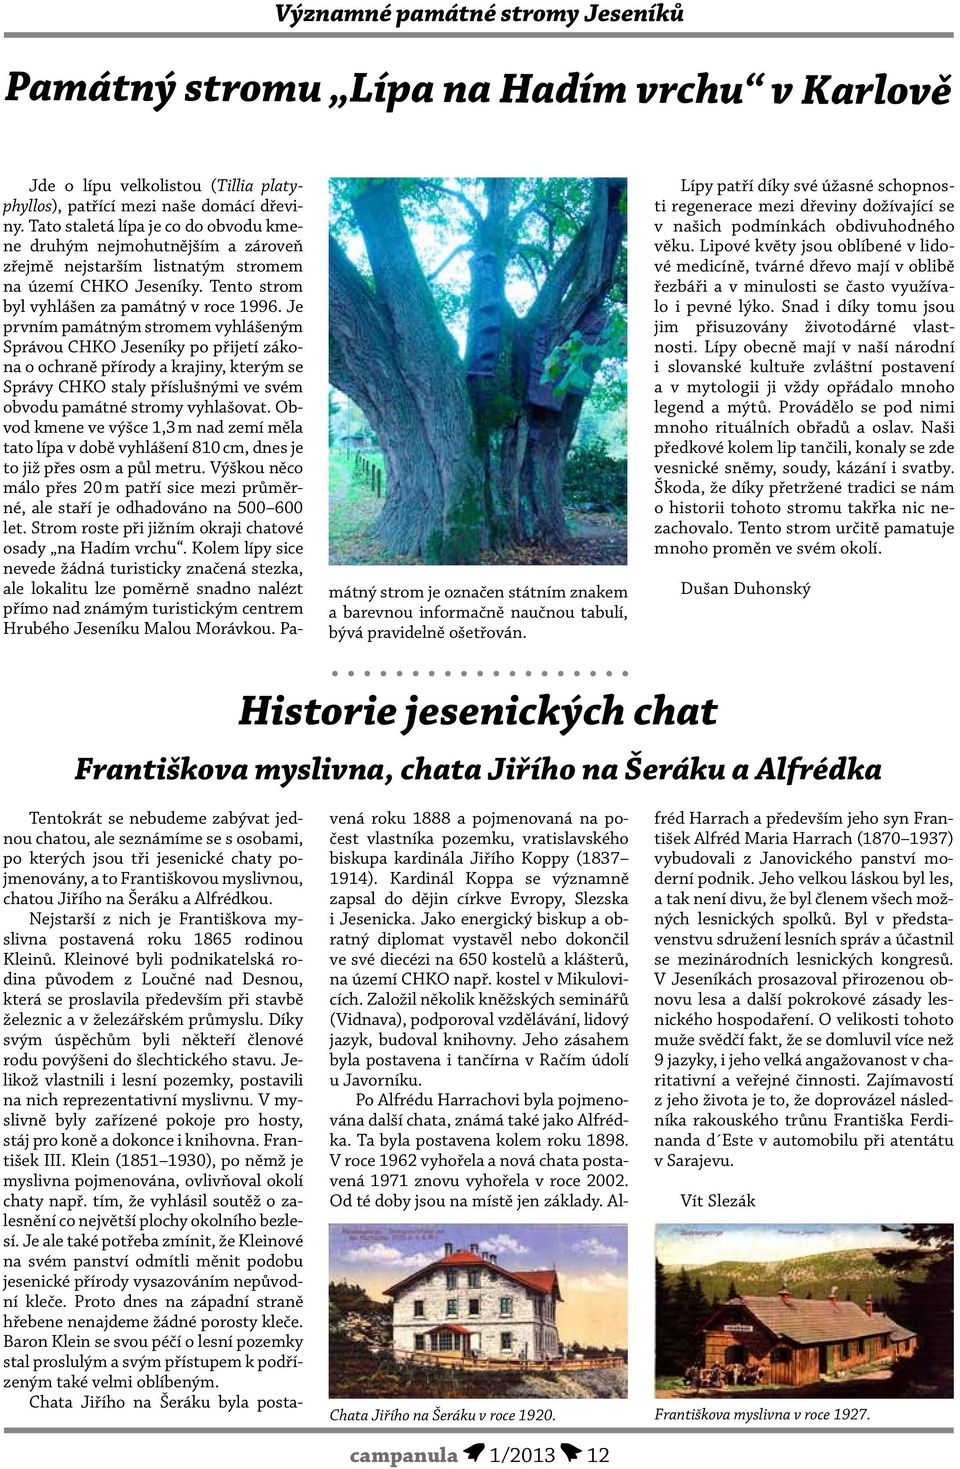 Je prvním památným stromem vyhlášeným Správou CHKO Jeseníky po přijetí zákona o ochraně přírody a krajiny, kterým se Správy CHKO staly příslušnými ve svém obvodu památné stromy vyhlašovat.